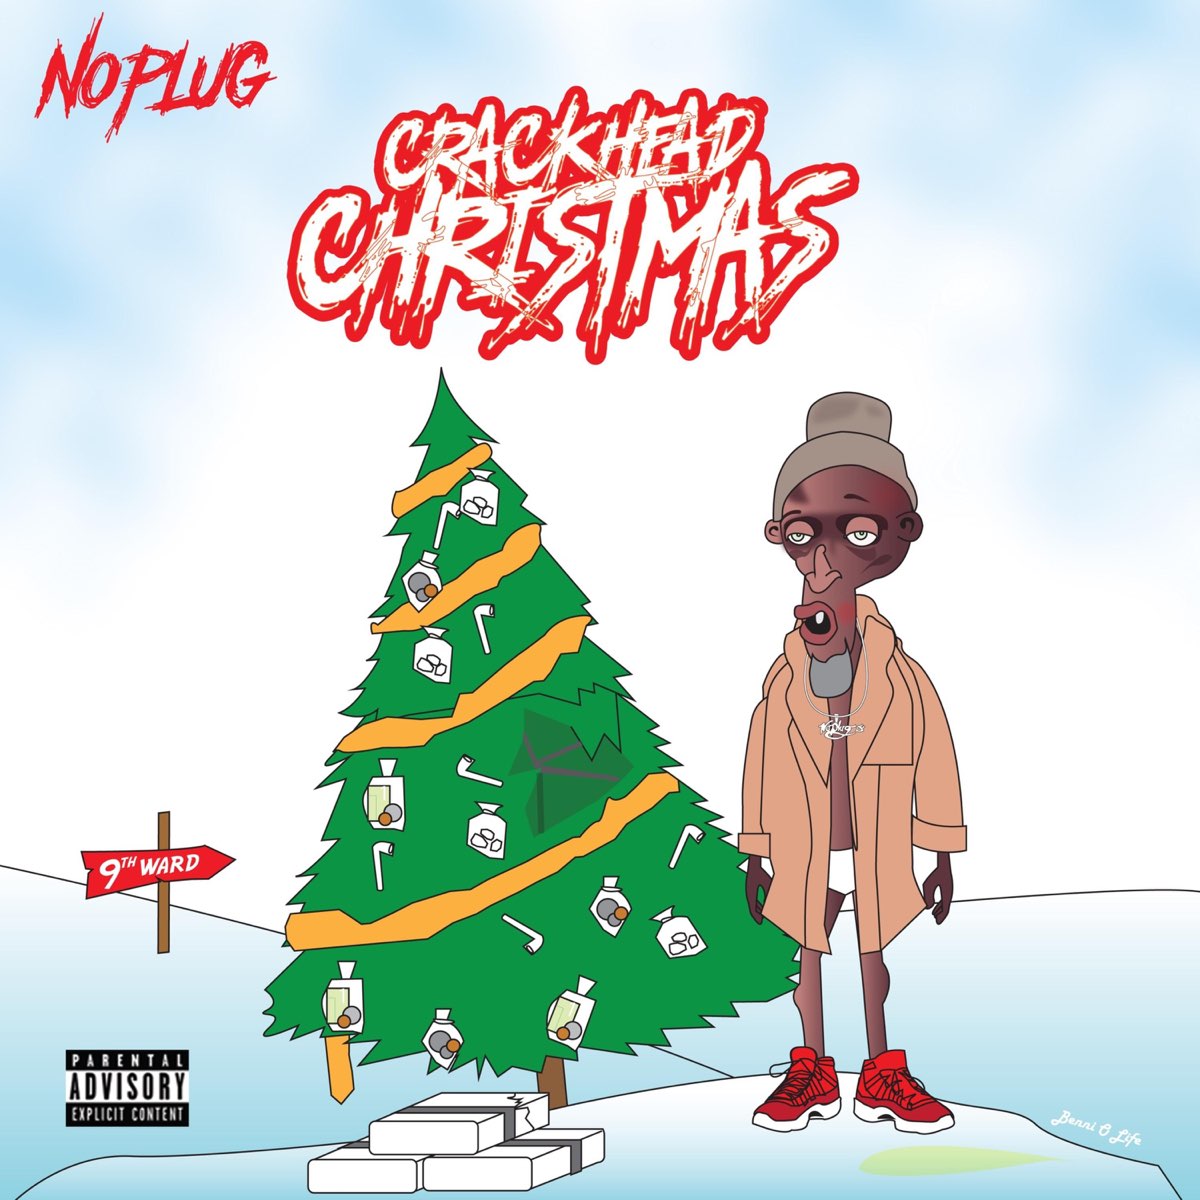 ‎Crackhead Christmas - Album by No Plug - Apple Music